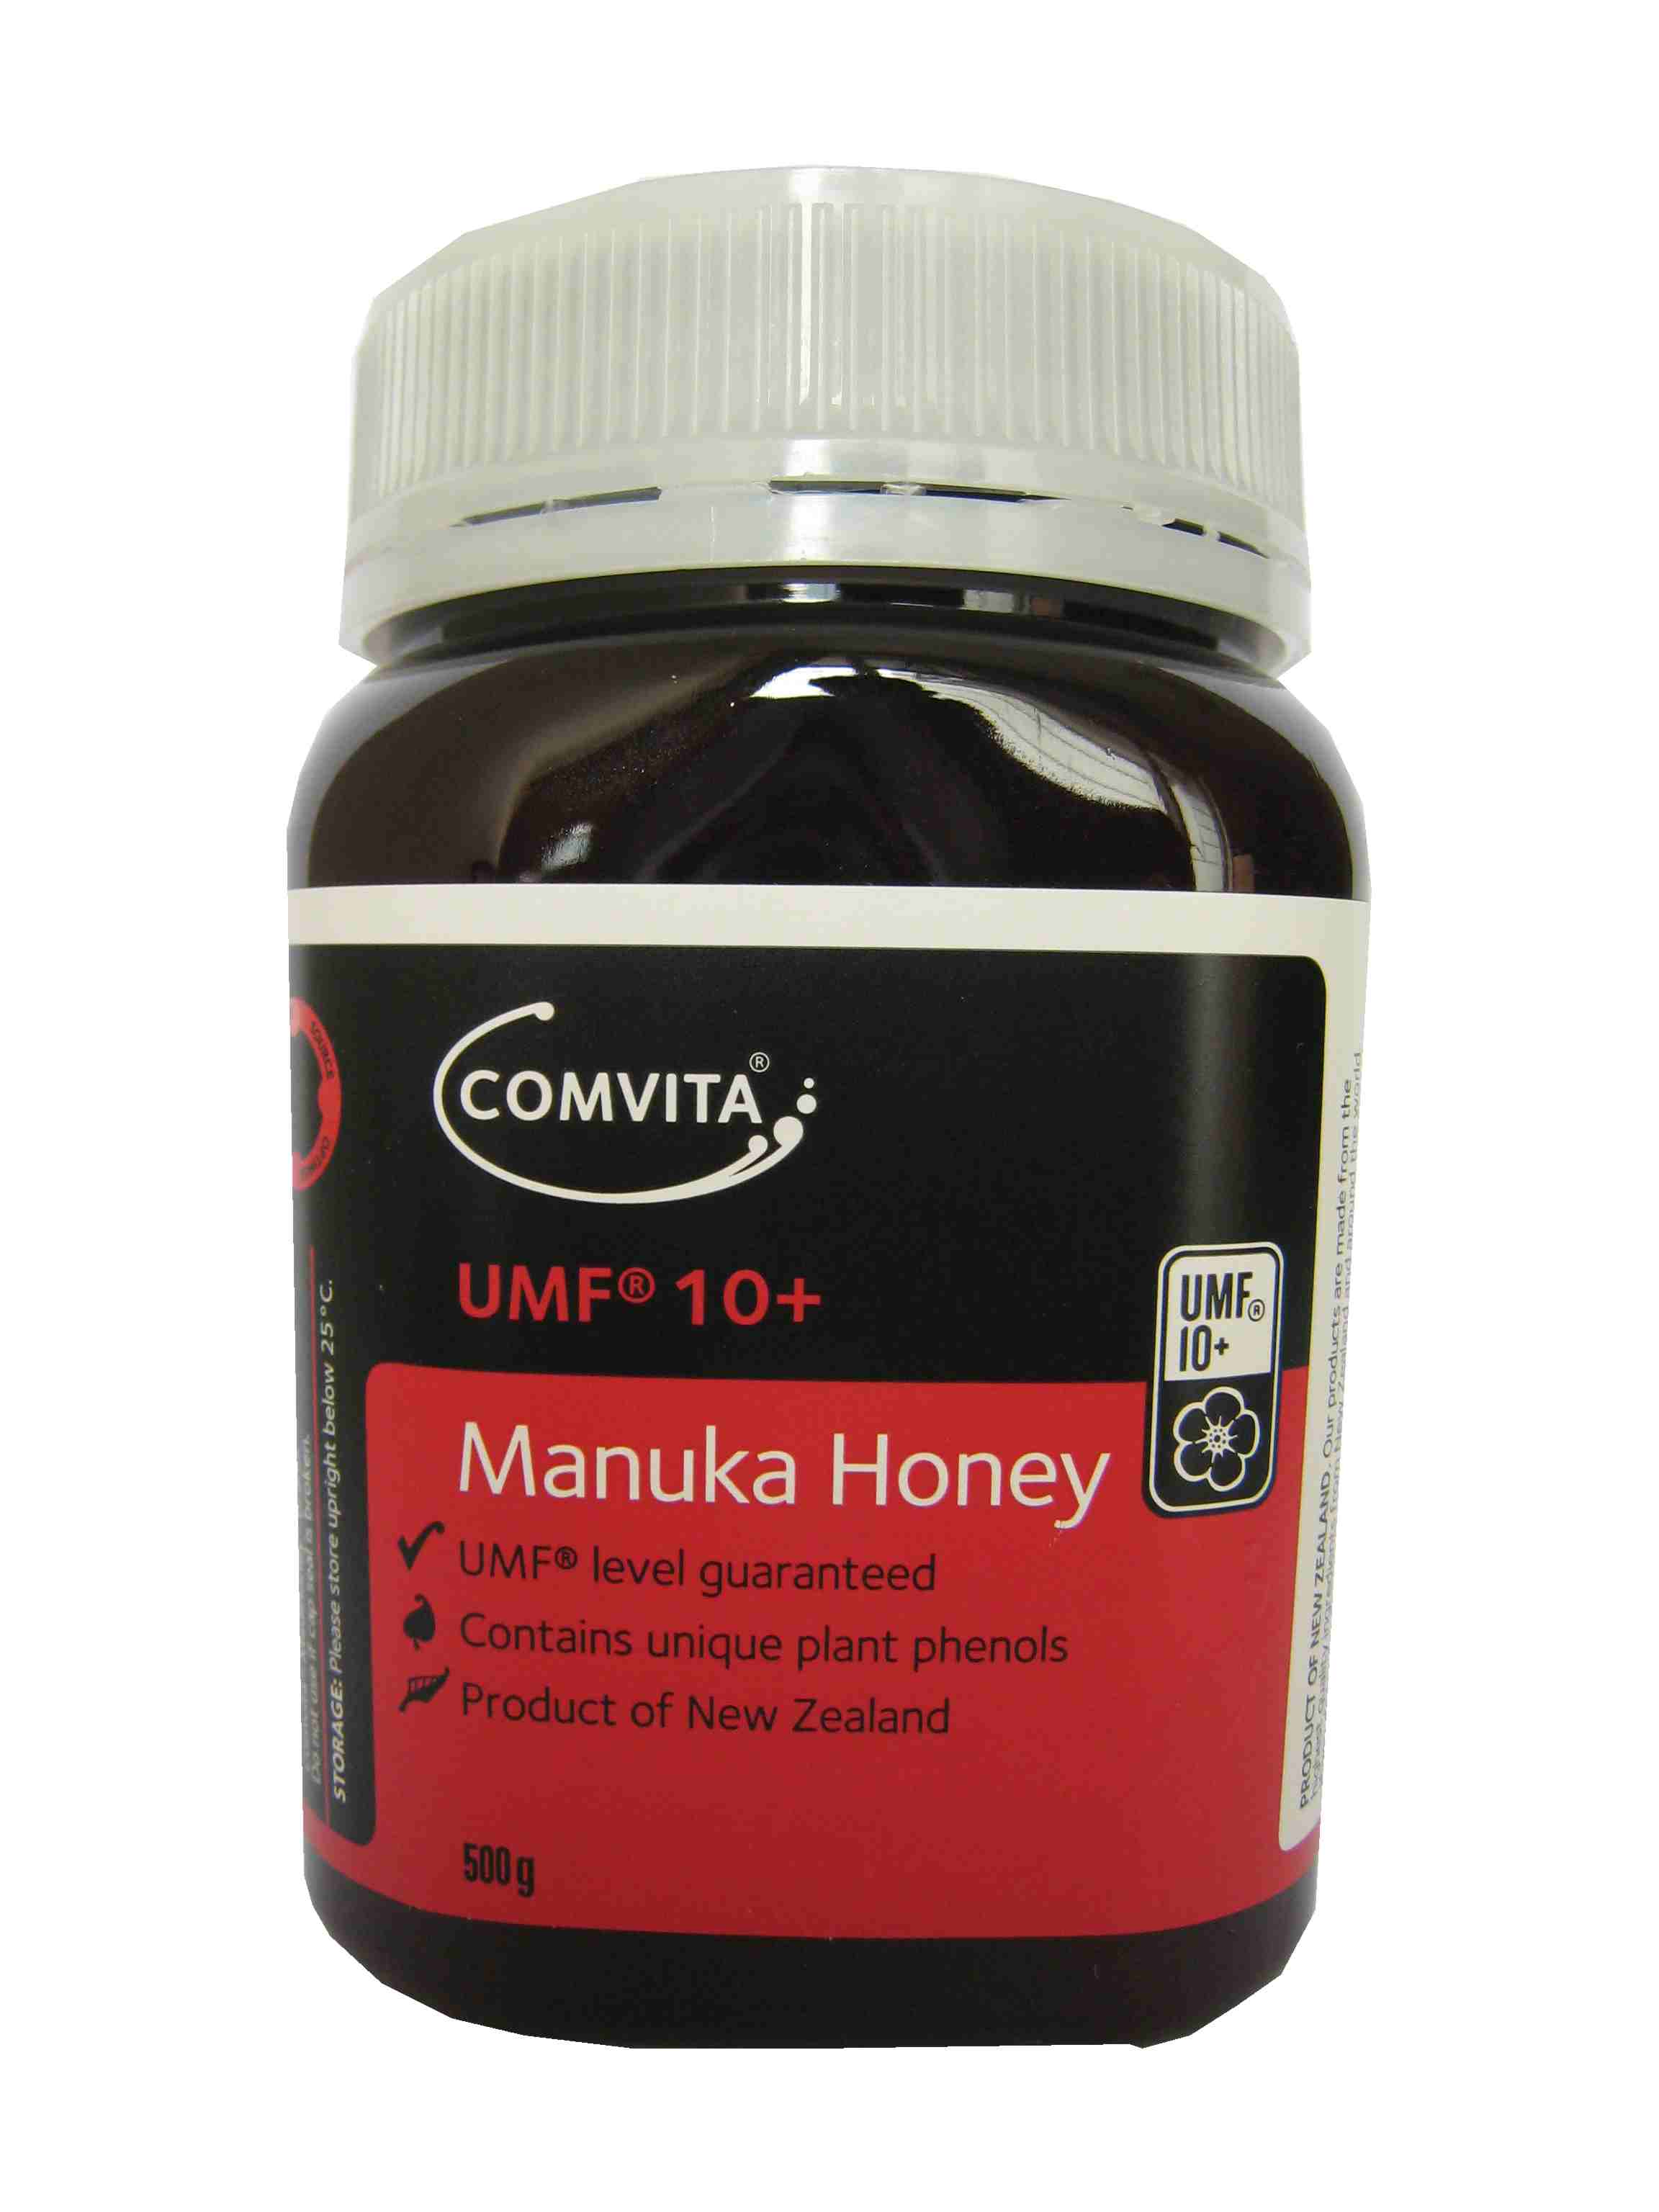 10+ Manuka Honey 500g